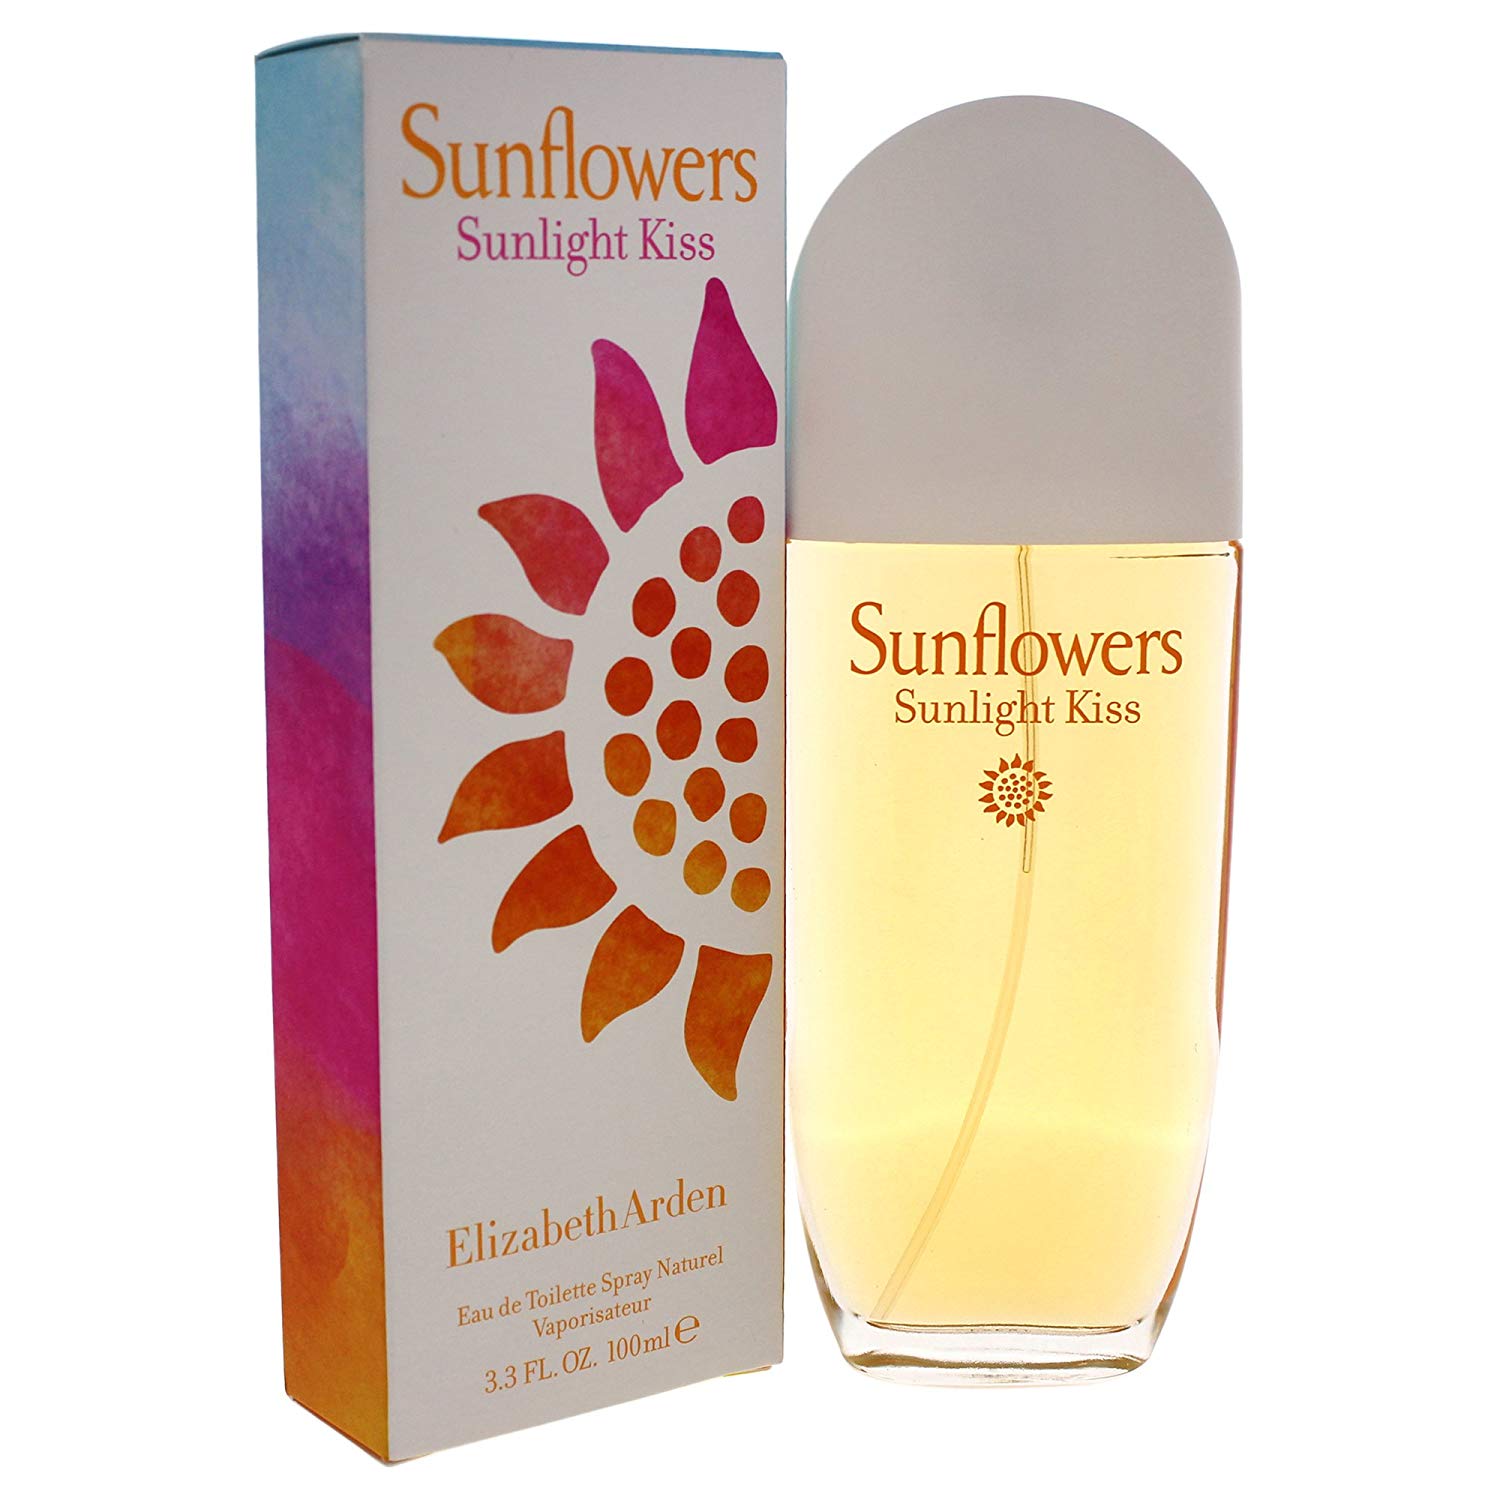 Elizabeth Arden Sunflowers Sunlight Kiss Eau de Toilette 100ml Spray